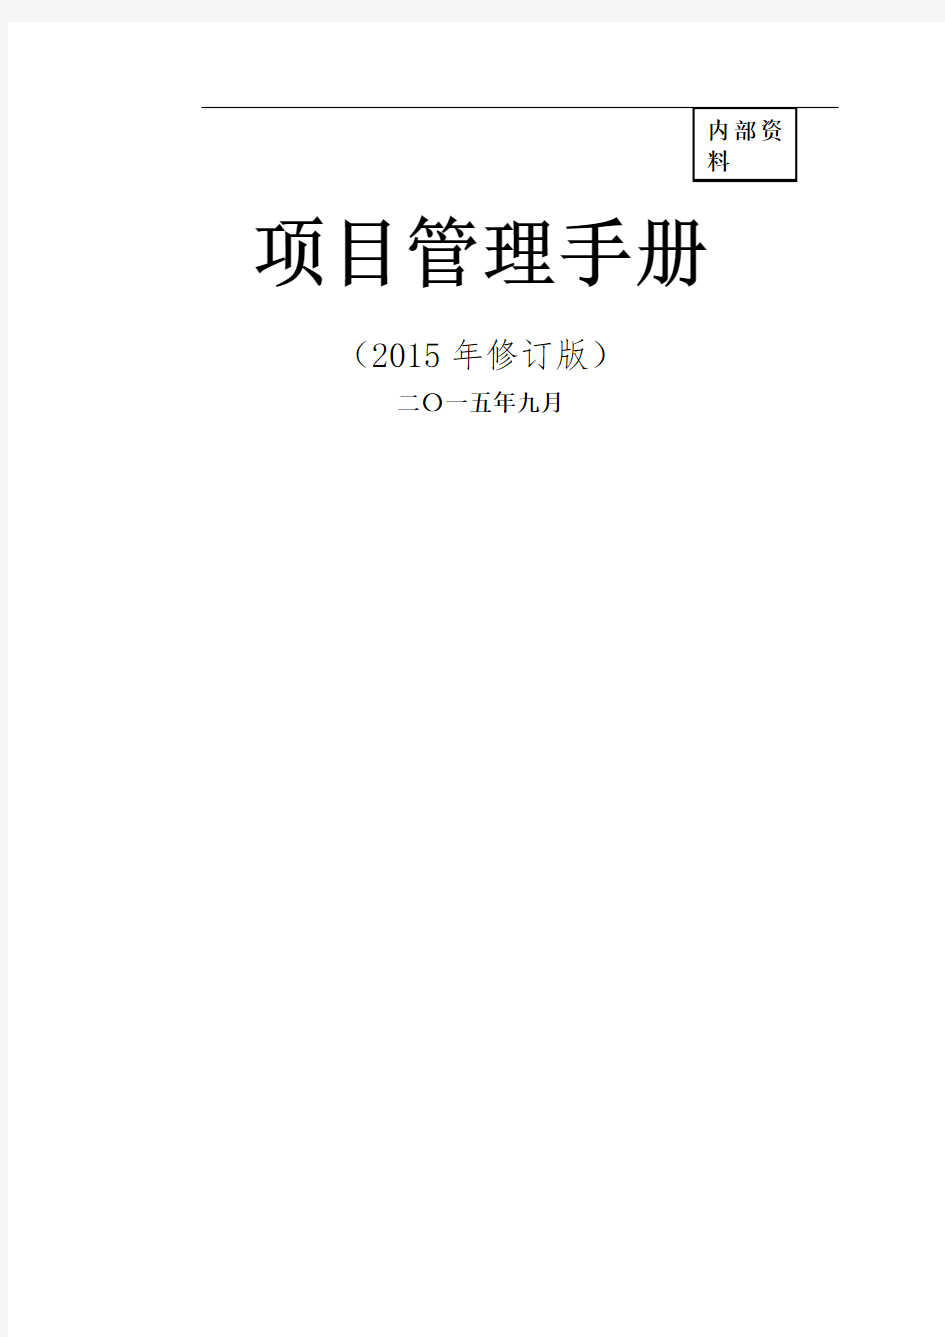 中建总公司《项目管理手册》年修订版最终稿印刷版